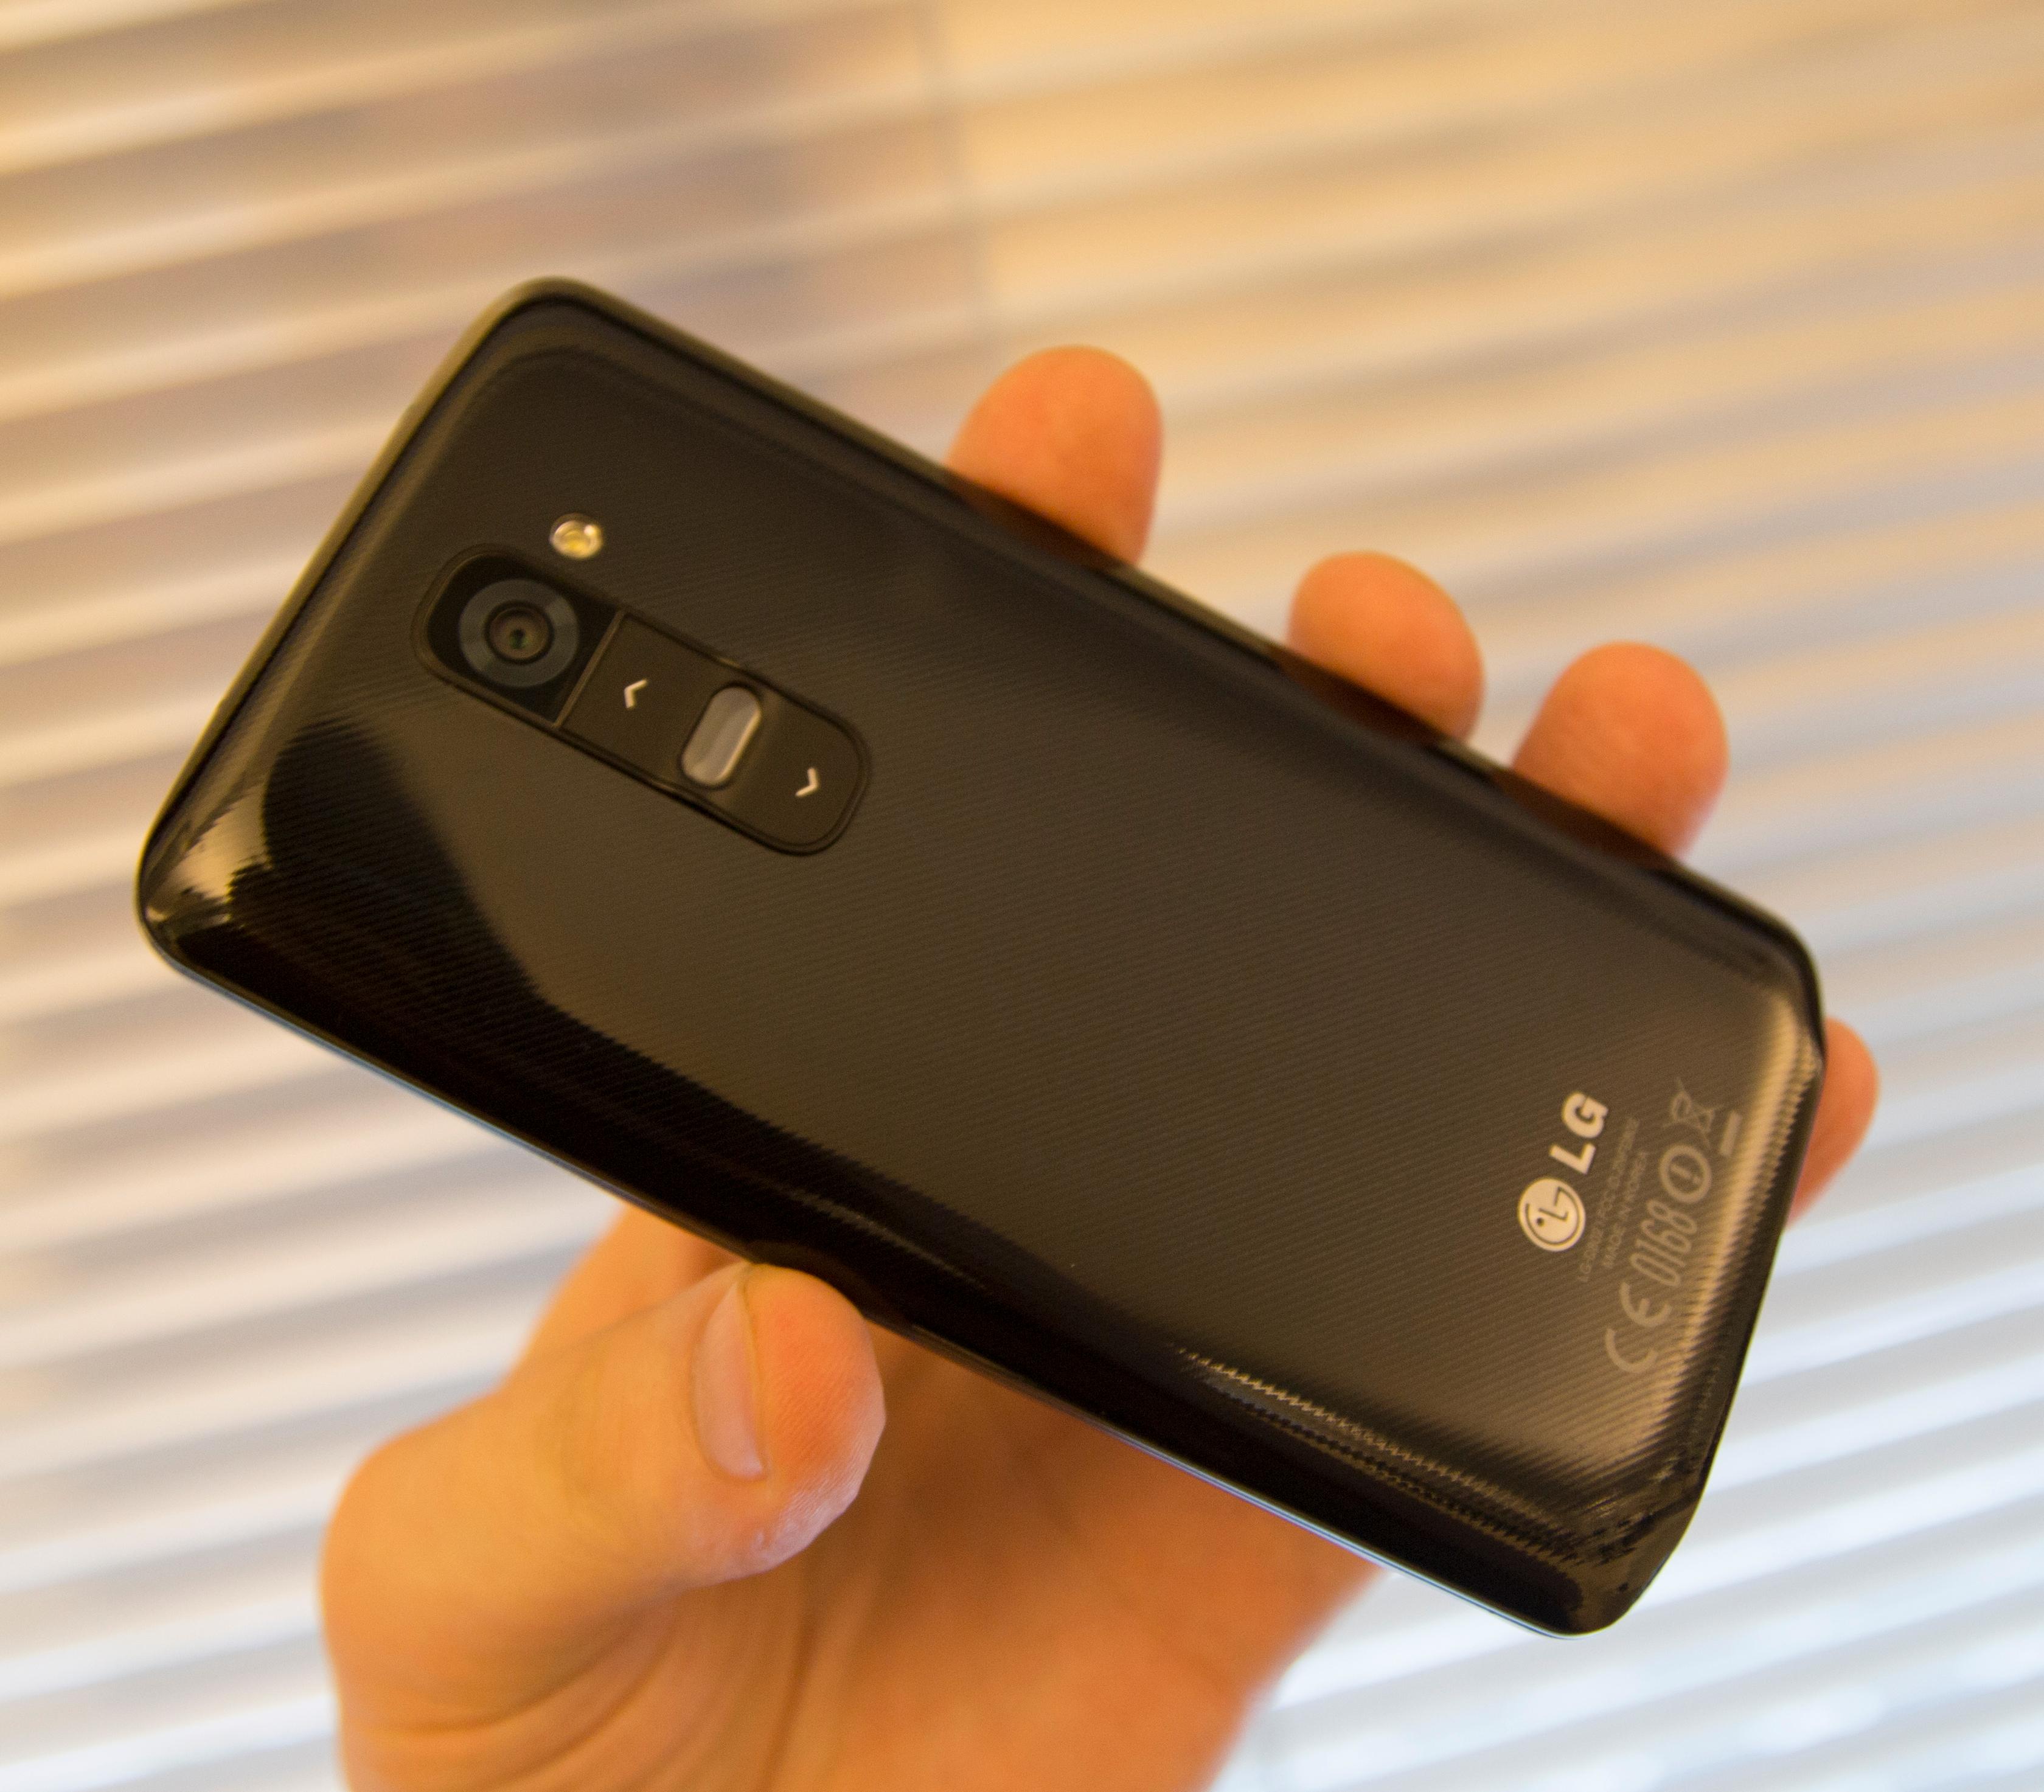 De fysiske knappene har LG flyttet til baksiden av telefonen. Testproduktet vårt er den svarte utgaven, med et karbonfiberaktig mønster på baksiden.Foto: Finn Jarle Kvalheim, Amobil.no